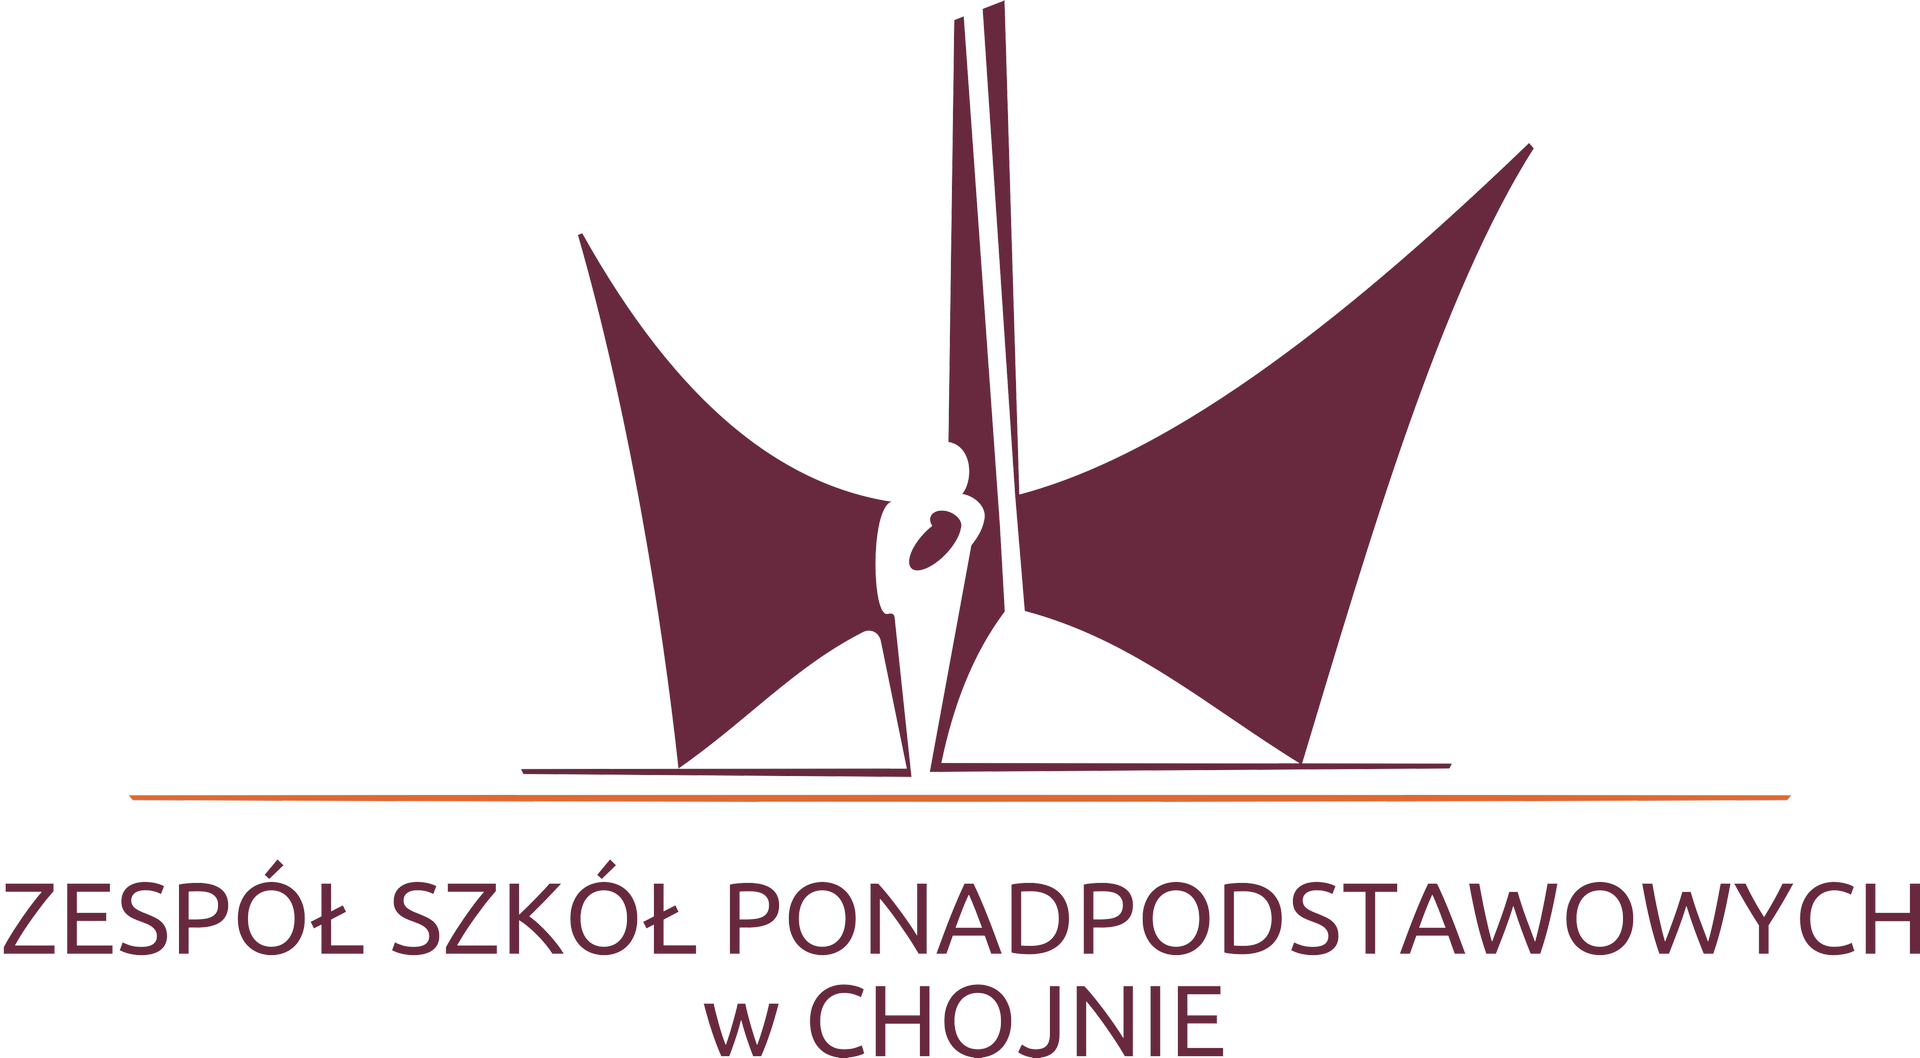 ZSP - logo